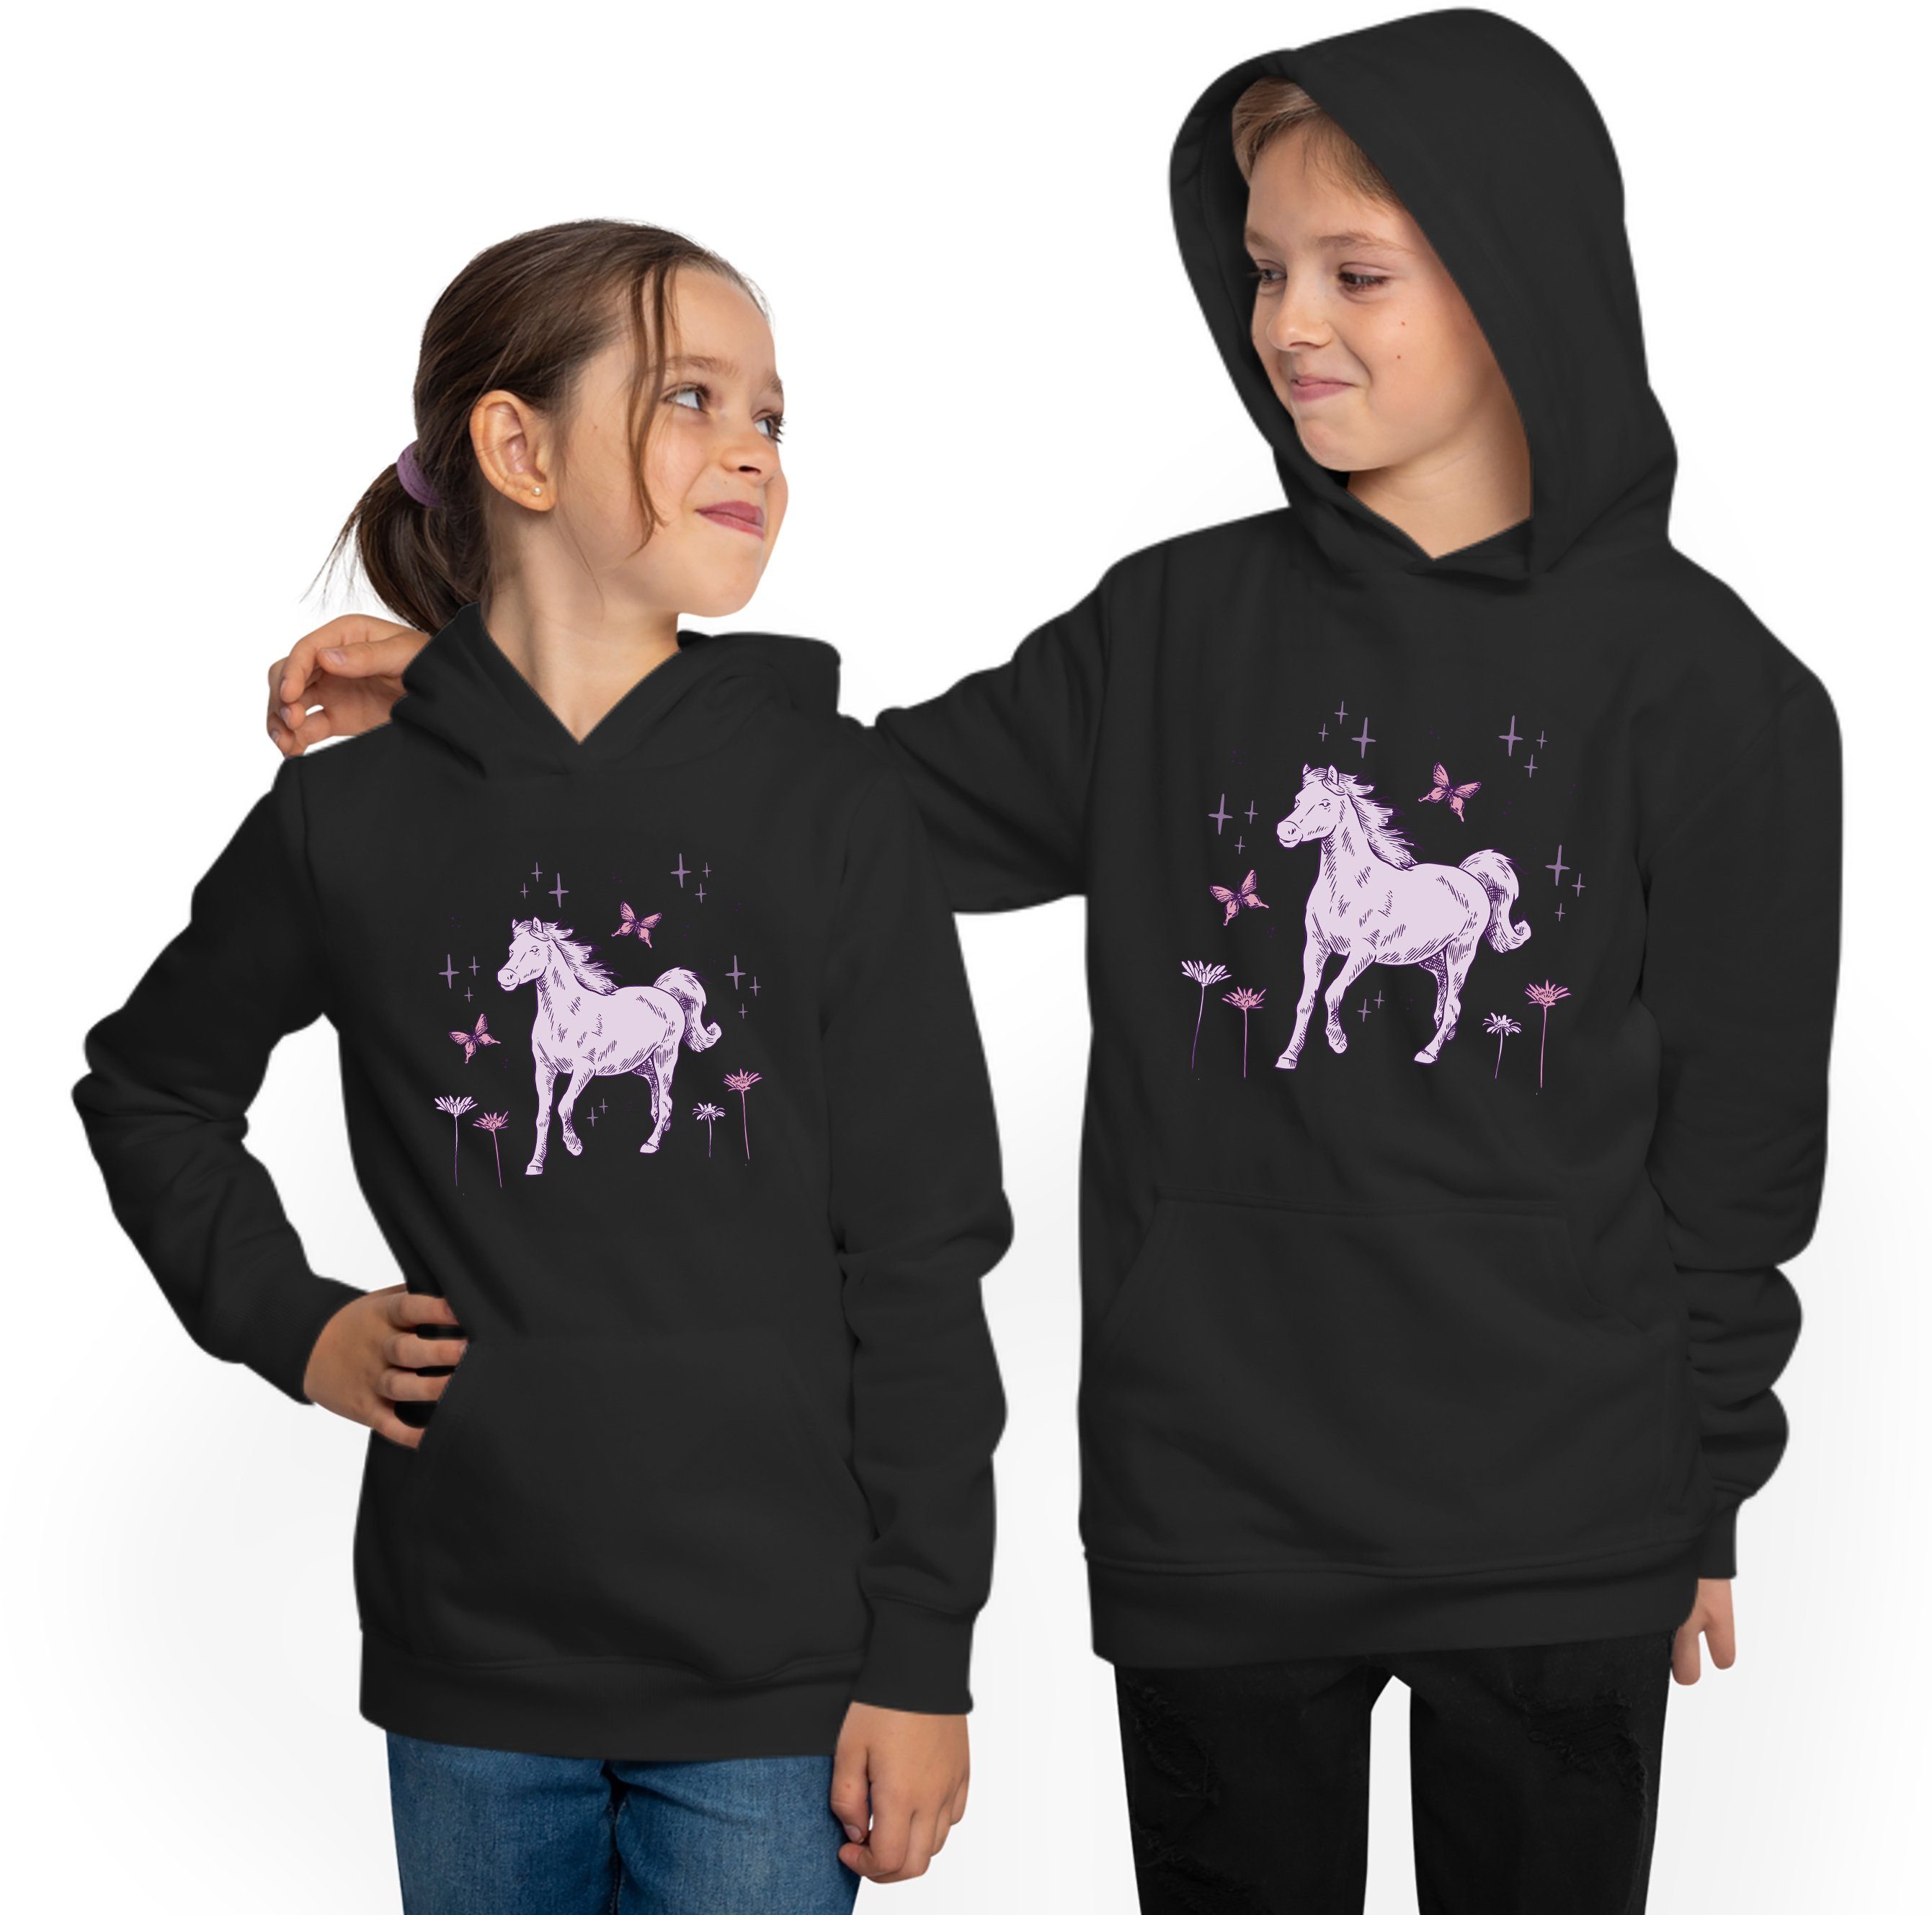 MyDesign24 Pferd Sweatshirt Hoodie Hoodie mit i144 Blumen Kapuzen und Kinder Kapuzensweater galoppierendes Aufdruck,